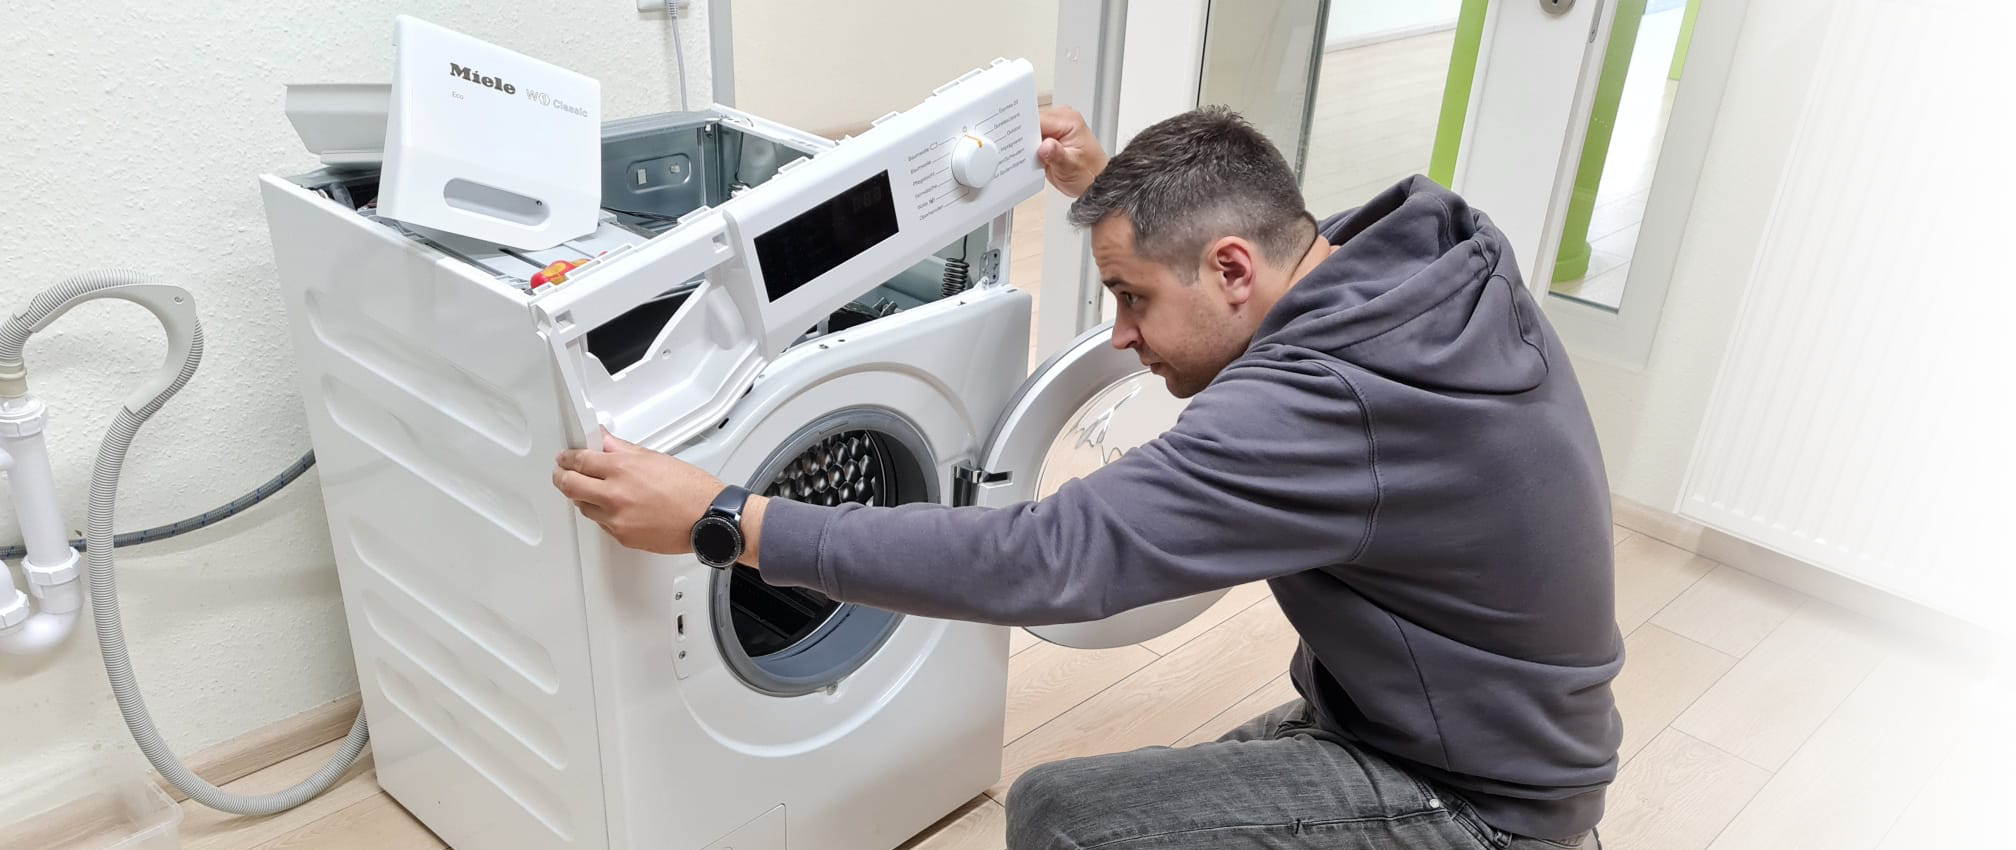 Bild vom Eigentümer beim Reparieren einer Waschmaschine